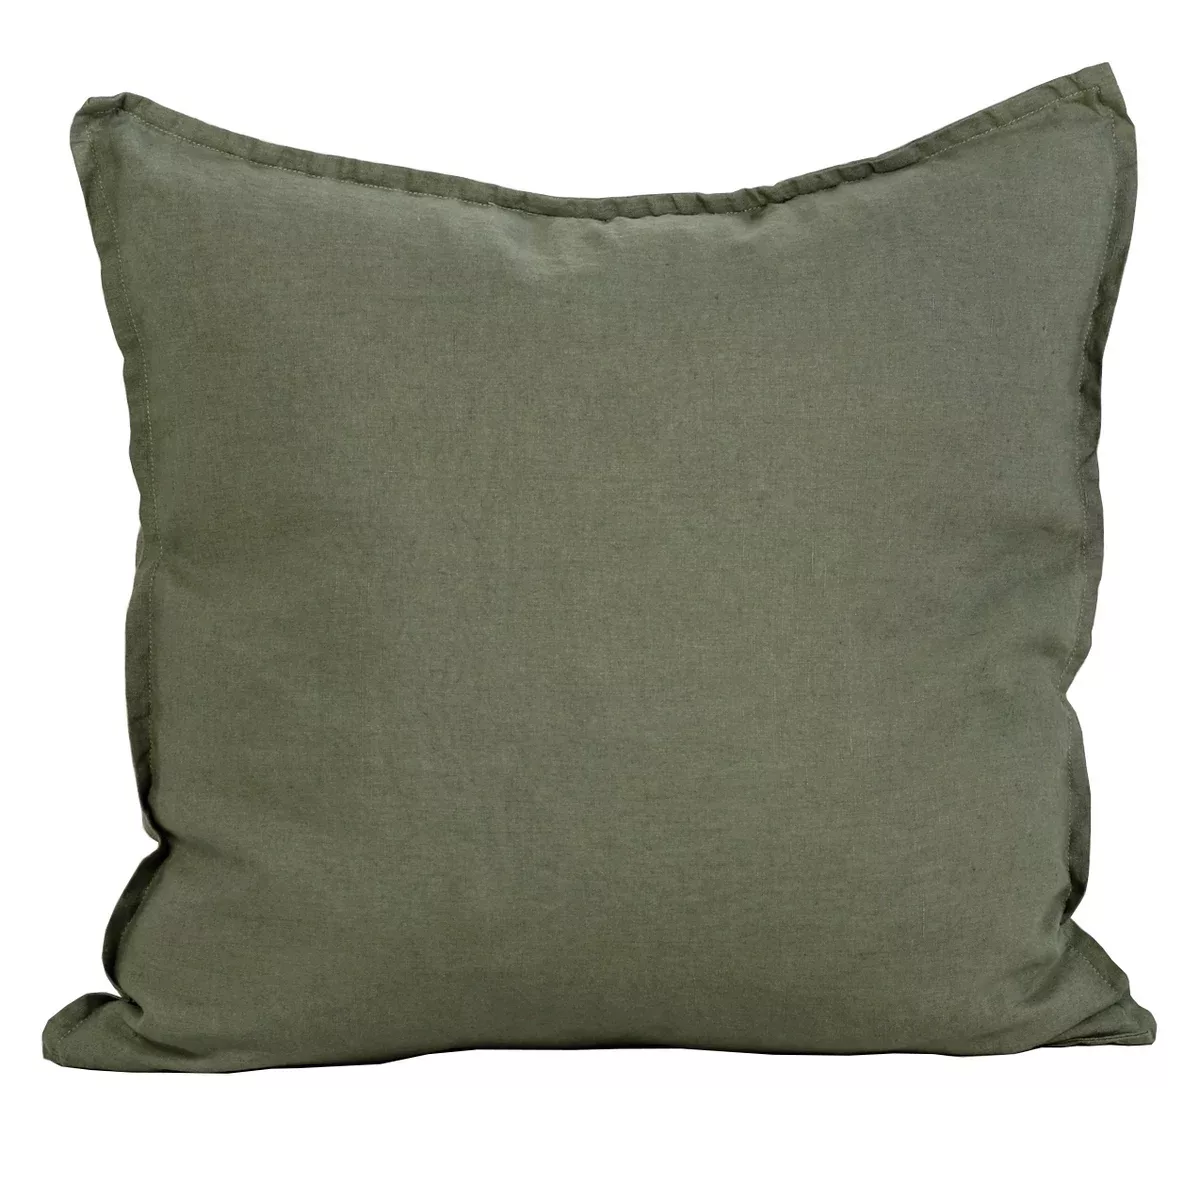 Washed linen Kissenbezug 50 x 50cm Khaki (grün) günstig online kaufen